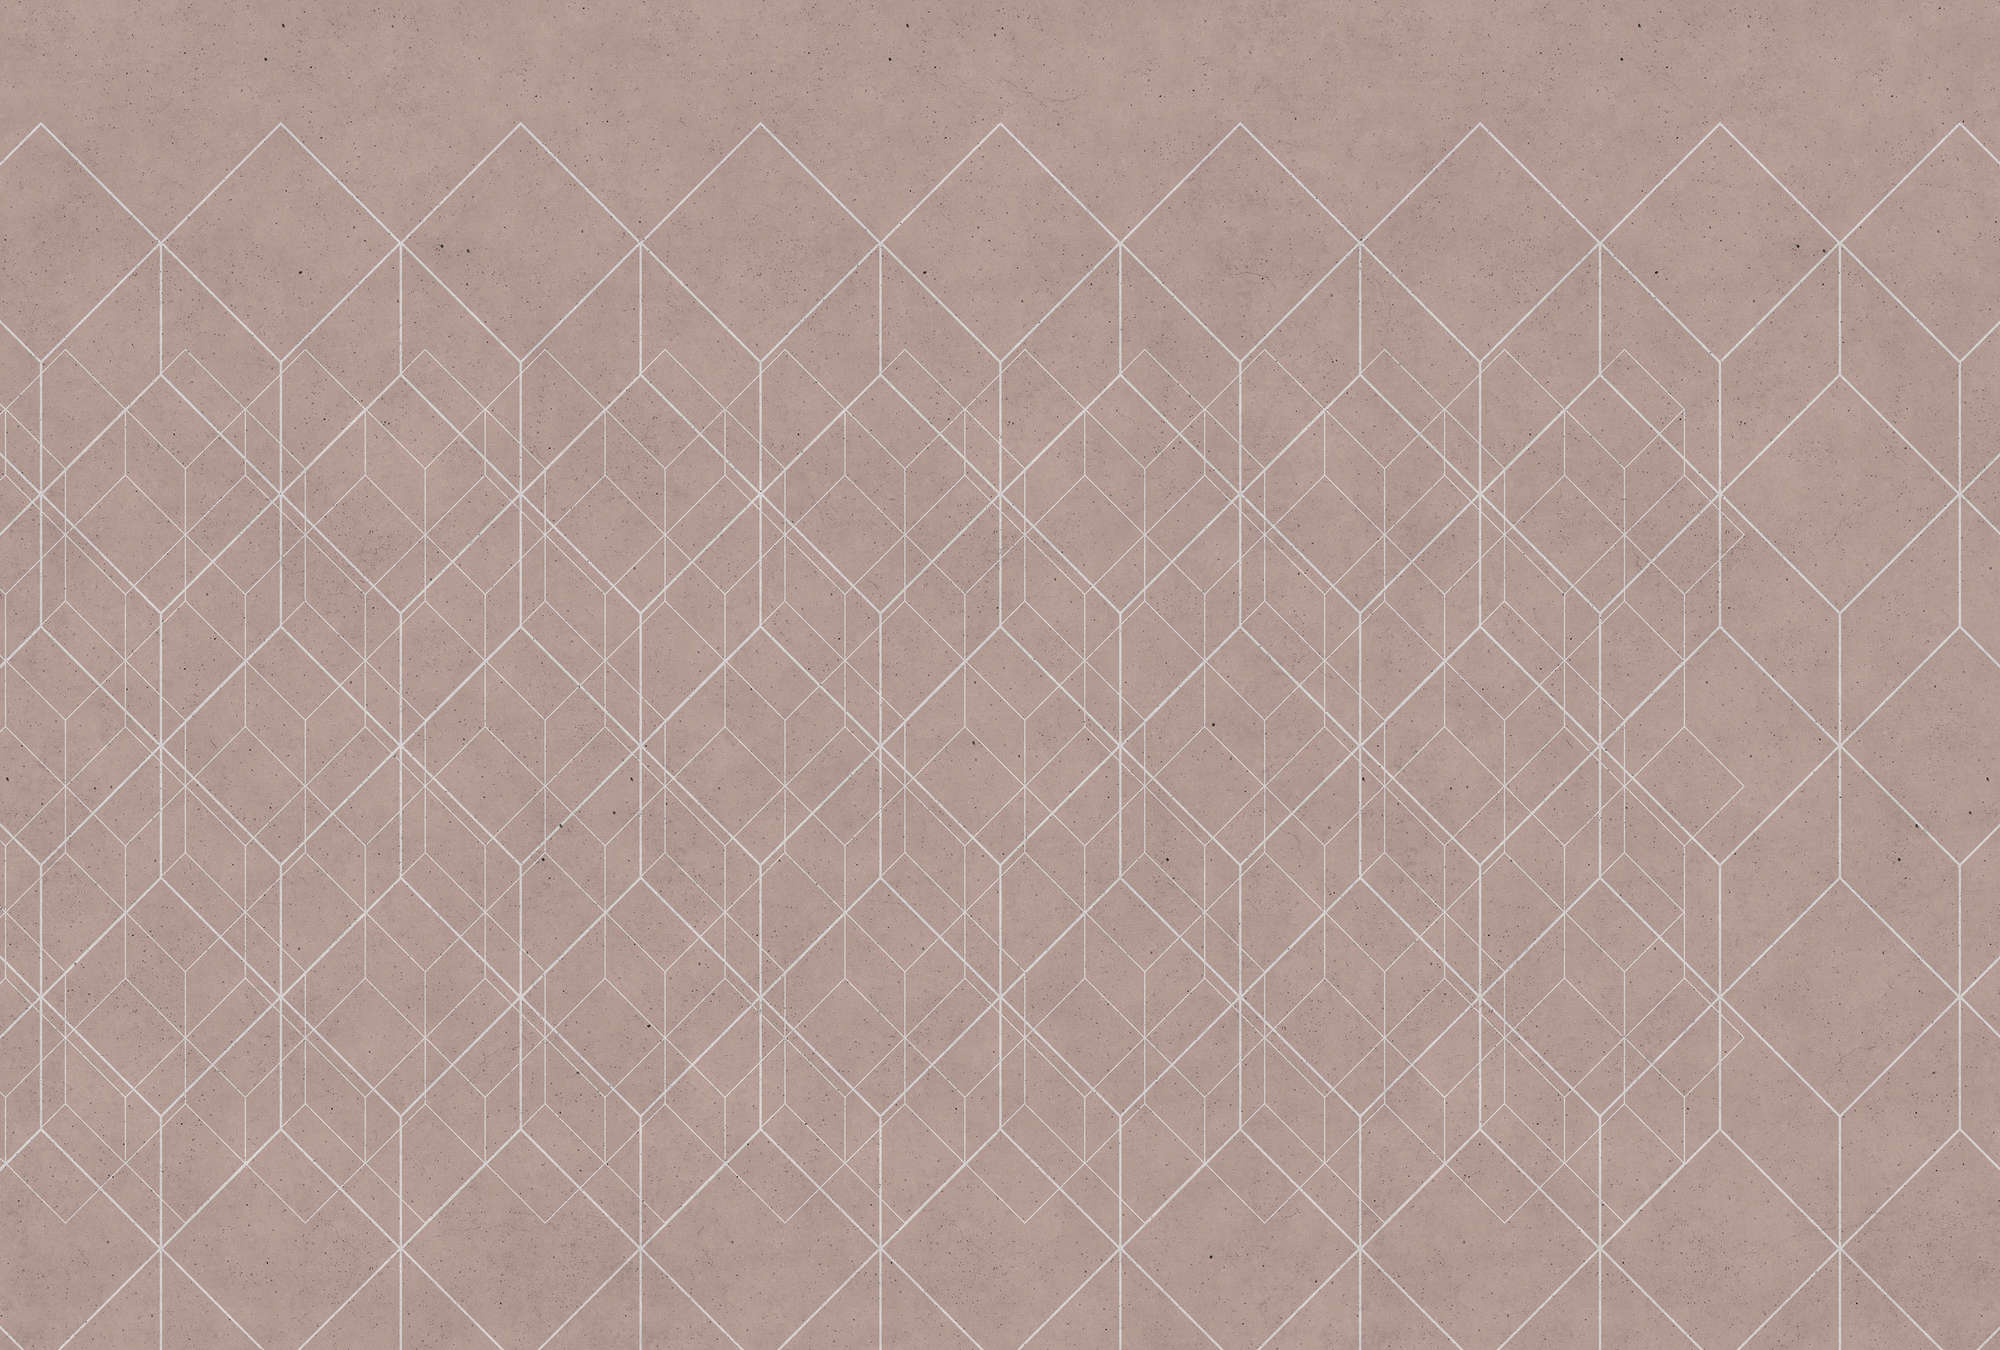             Fototapete geometrisches Muster – Beige, Weiß
        